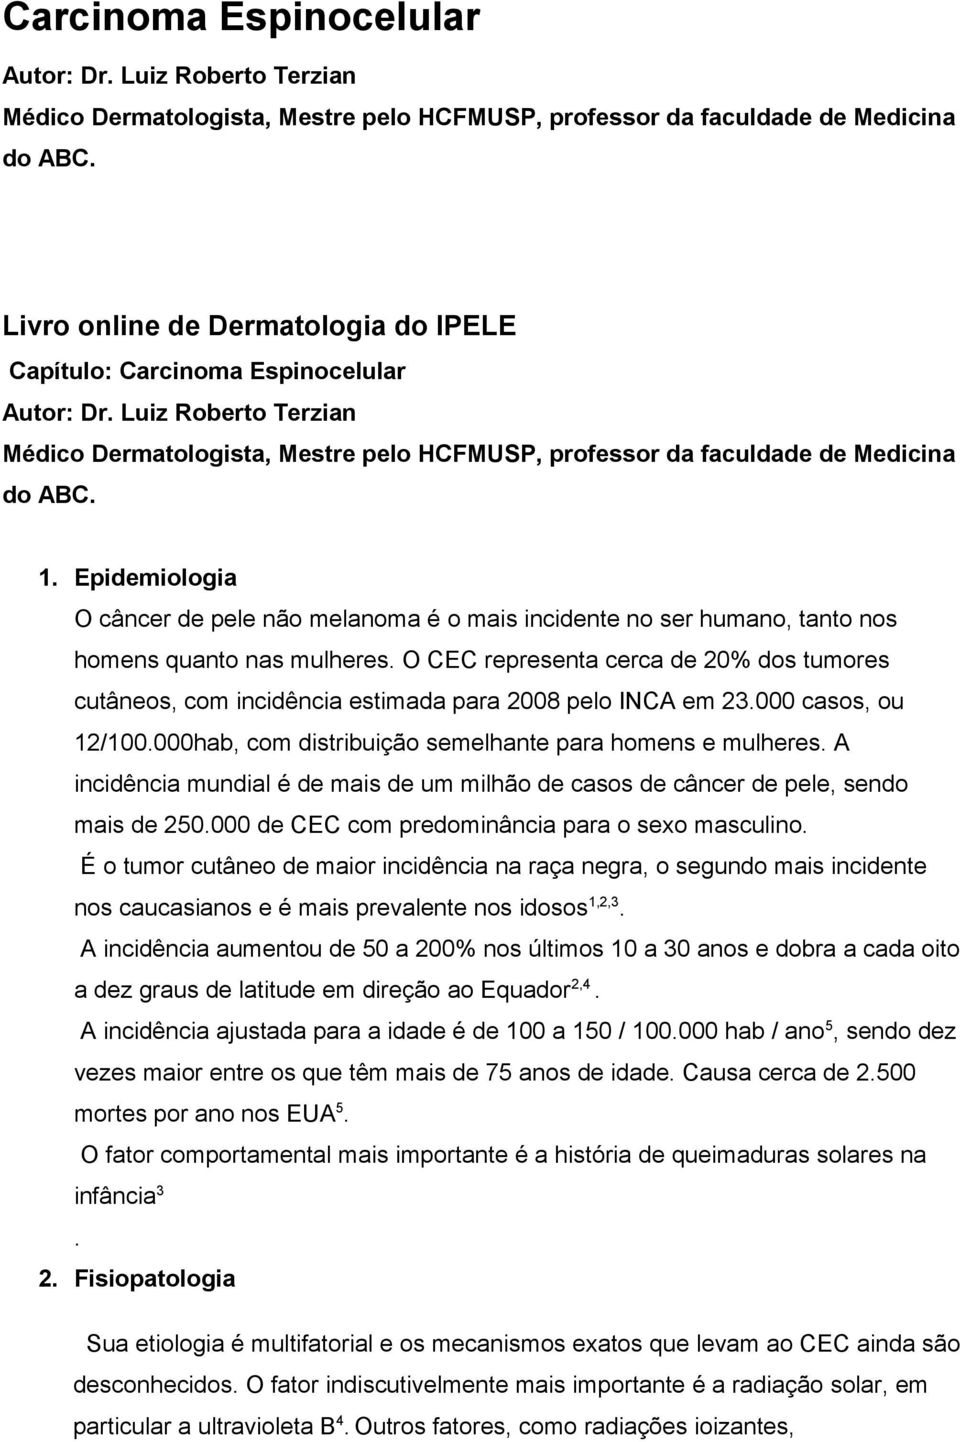 O CEC representa cerca de 20% dos tumores cutâneos, com incidência estimada para 2008 pelo INCA em 23.000 casos, ou 12/100.000hab, com distribuição semelhante para homens e mulheres.